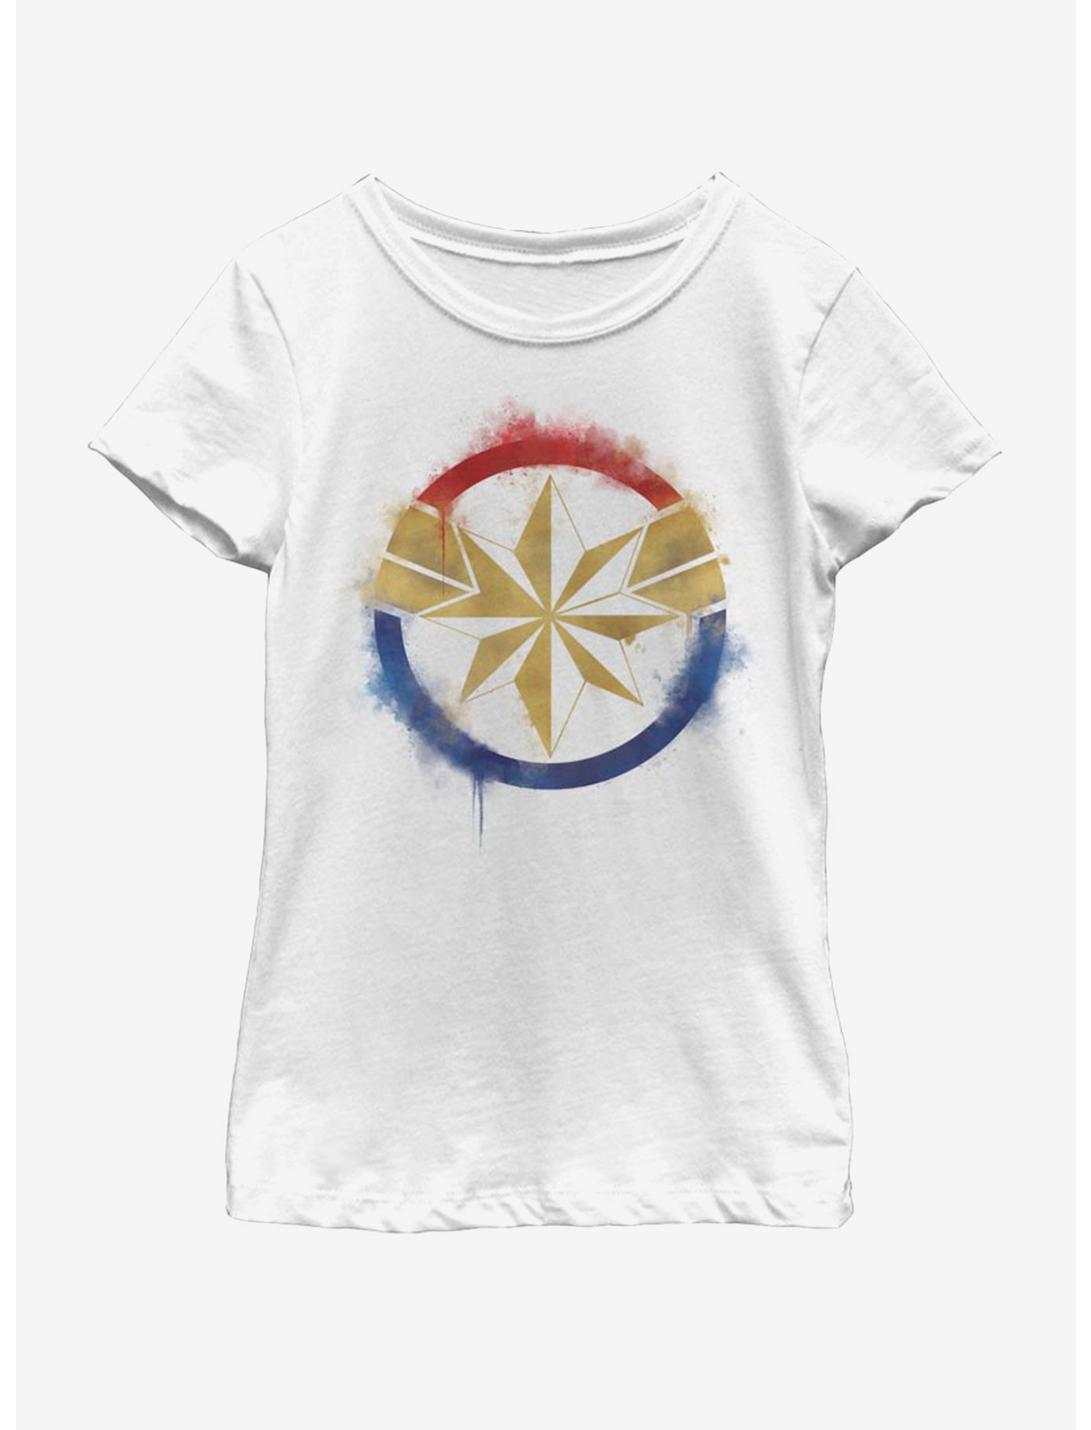 Marvel Avengers: Endgame Captain Marvel Spray Logo Youth Girls T-Shirt, WHITE, hi-res